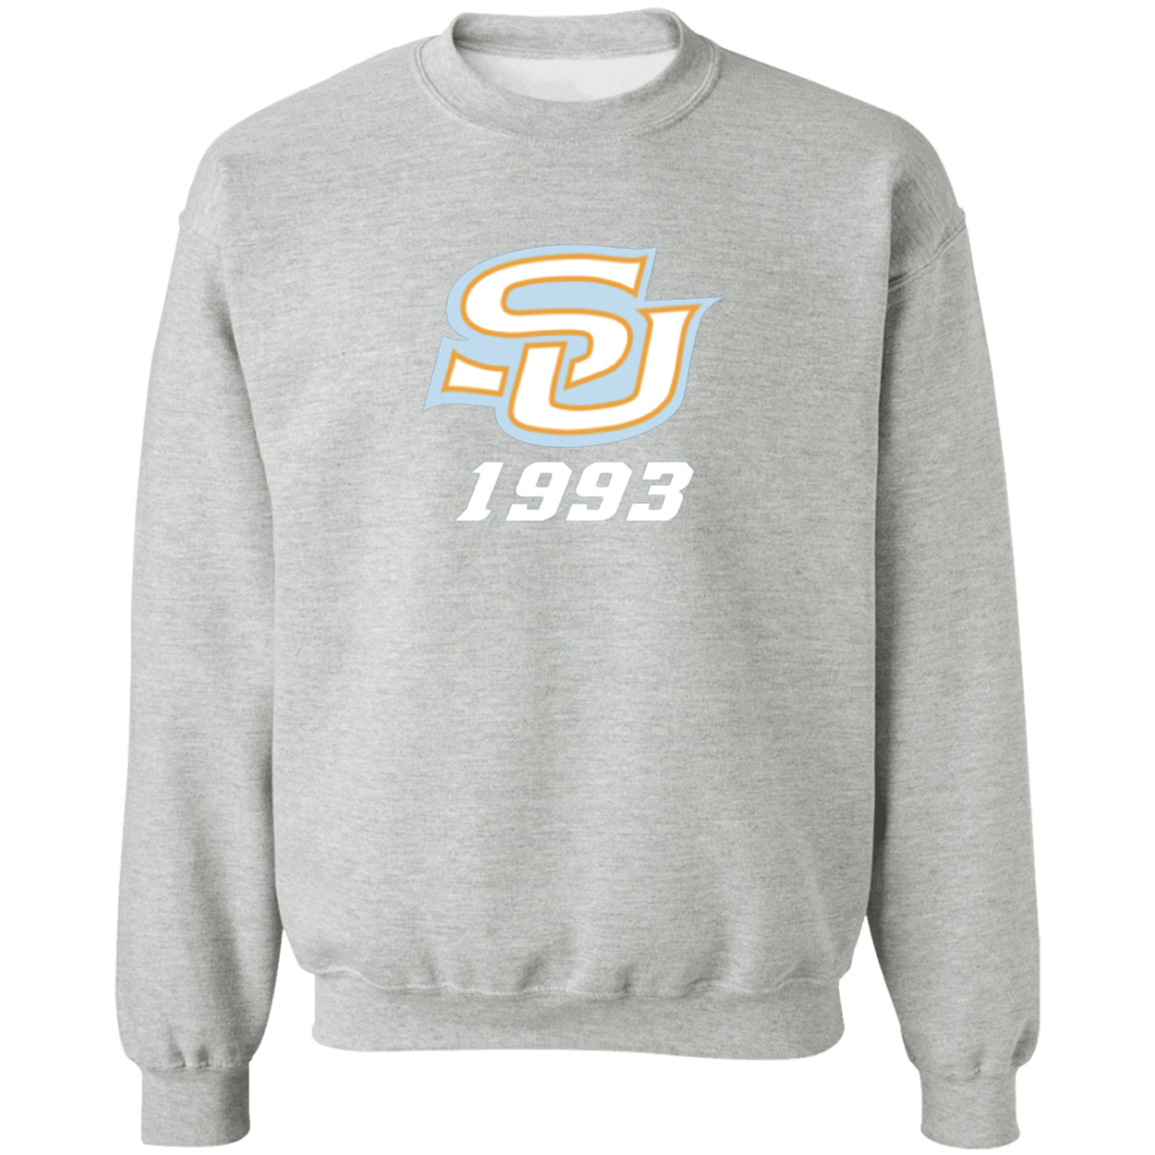 SU c/o 1993  G180 Crewneck Pullover Sweatshirt